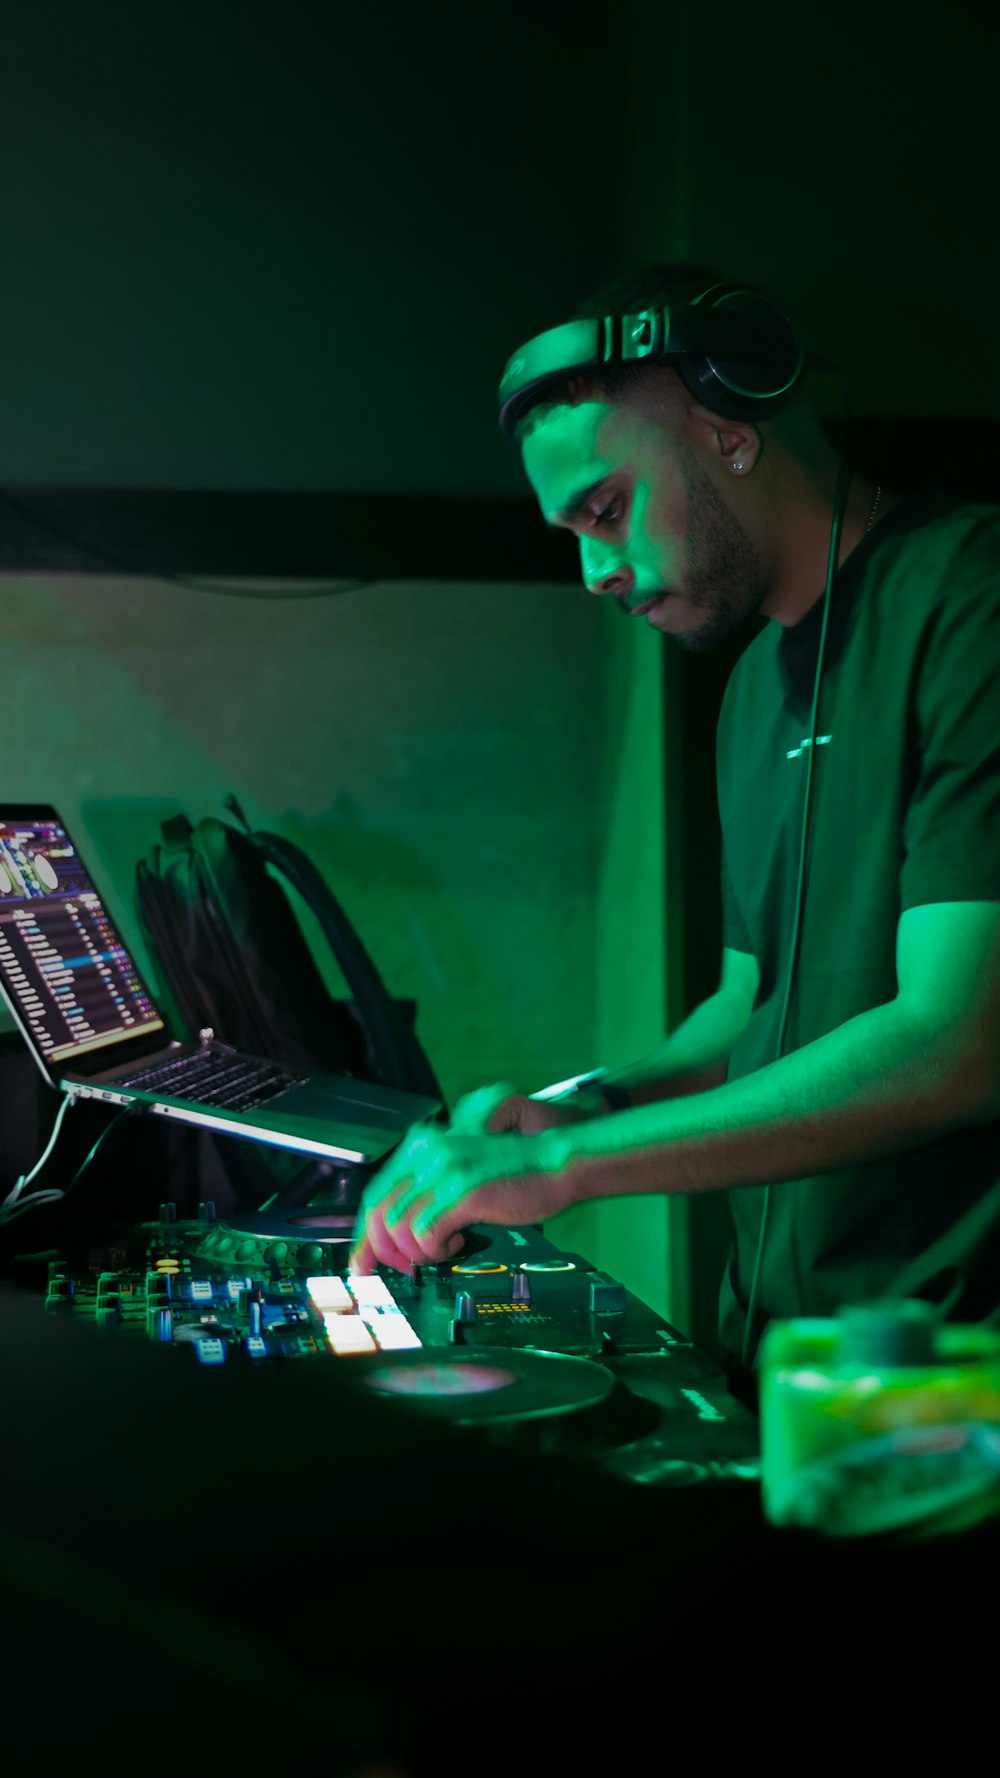 Ein DJ mischt Musik in einem dunklen Raum